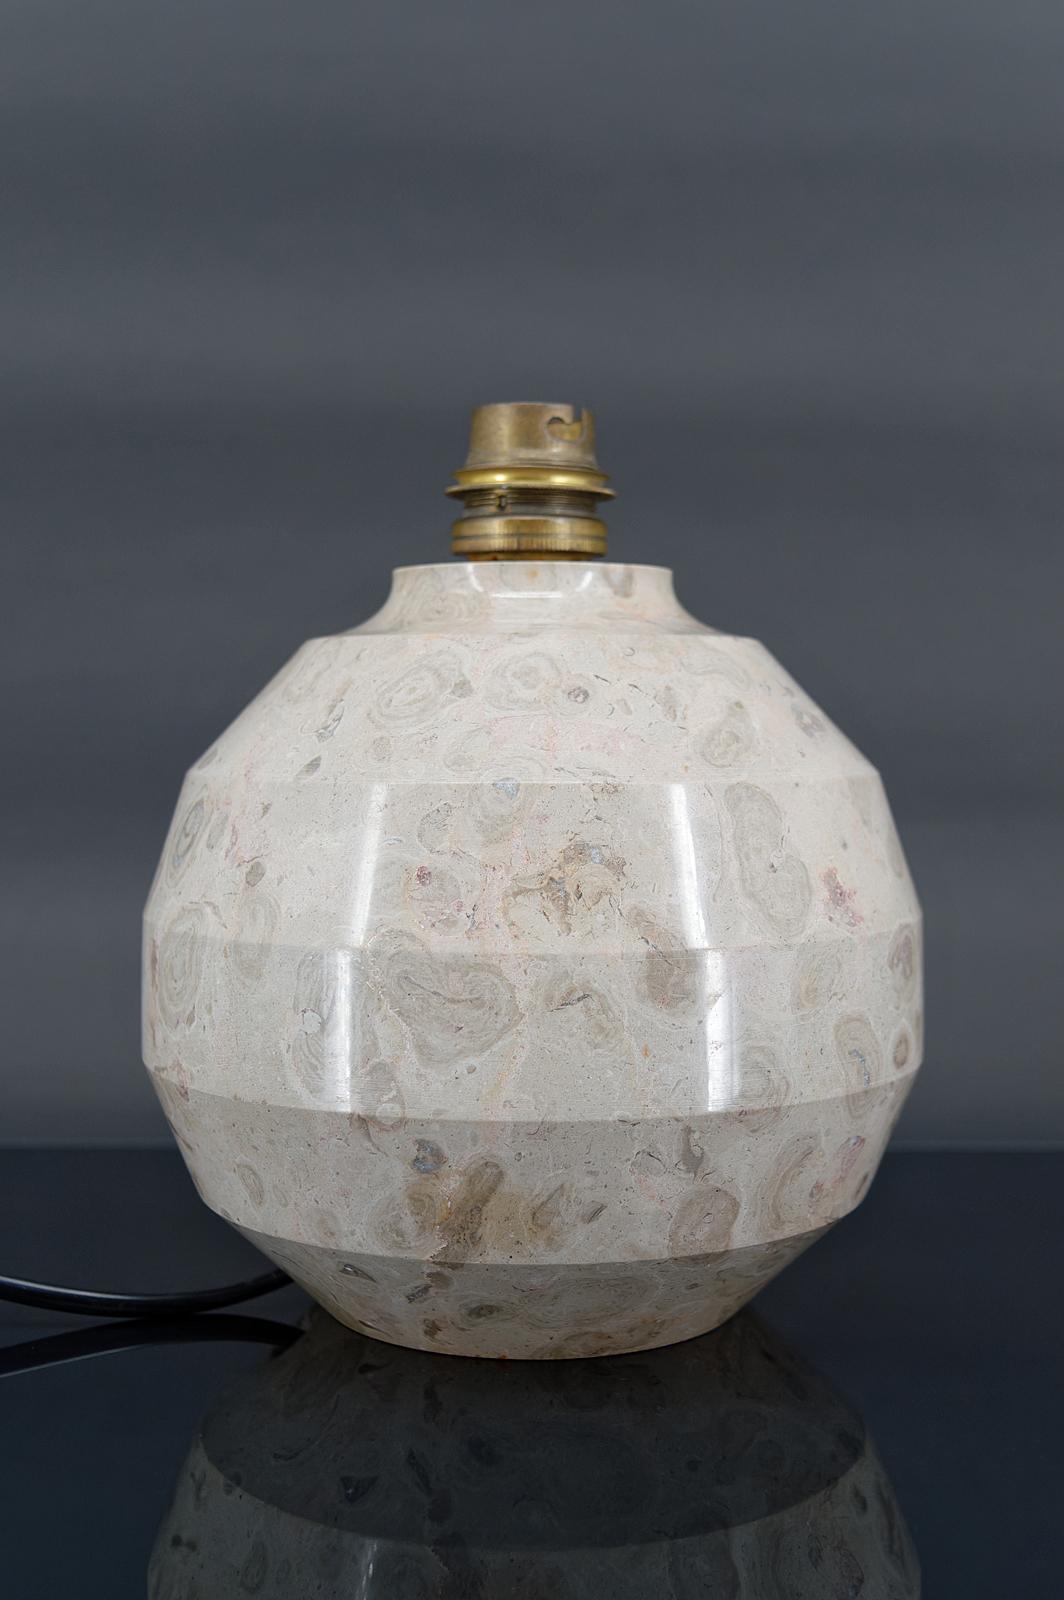 Lampe boule moderniste Art Déco en marbre sculpté.

France, Circa 1930

En excellent état, électricité neuve.

Dimensions :
hauteur 17 cm
diamètre 16 cm